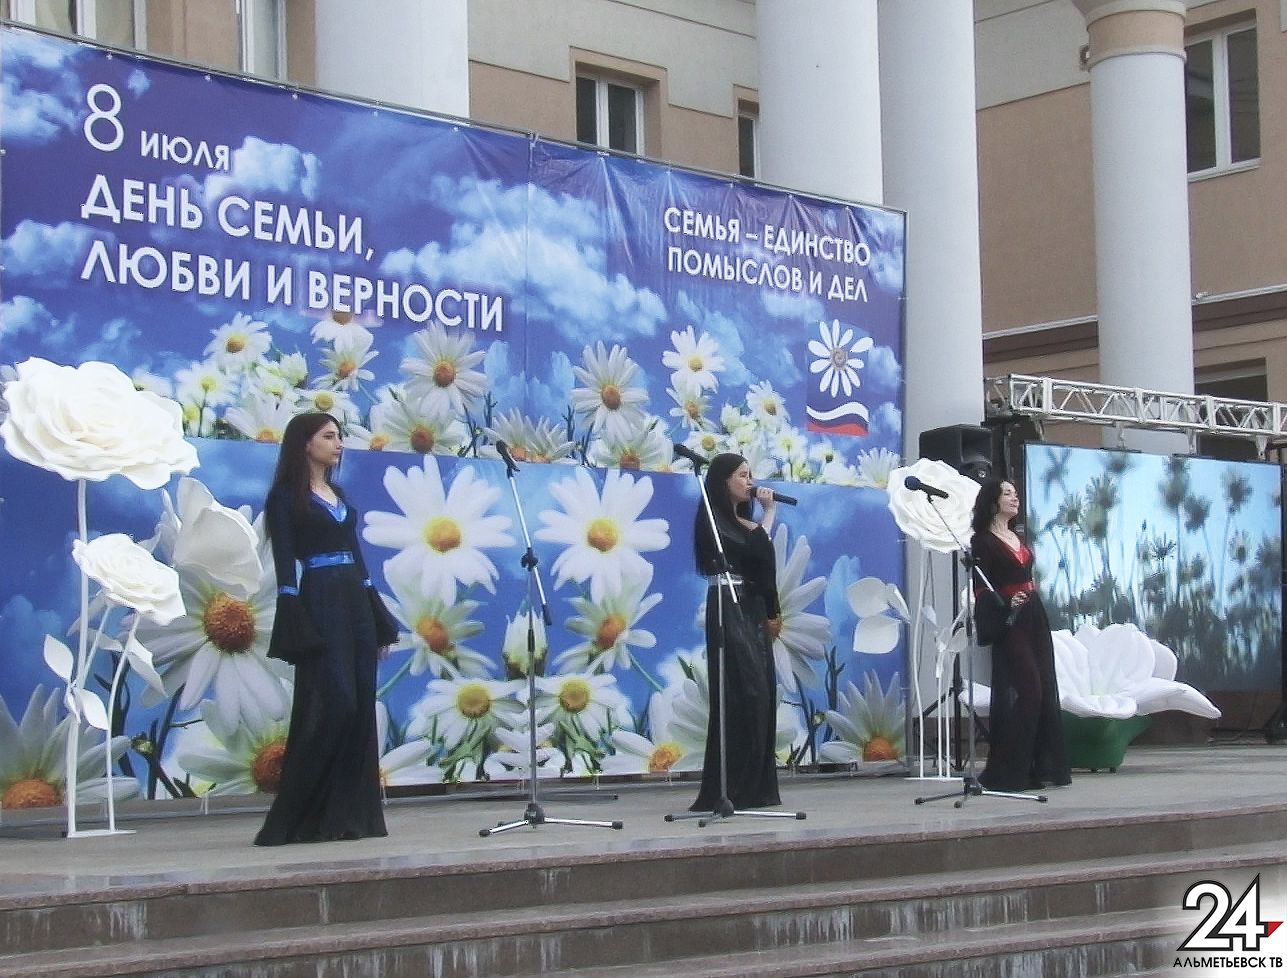 Истории крепкой любви звучали в День семьи, любви и верности в Альметьевске